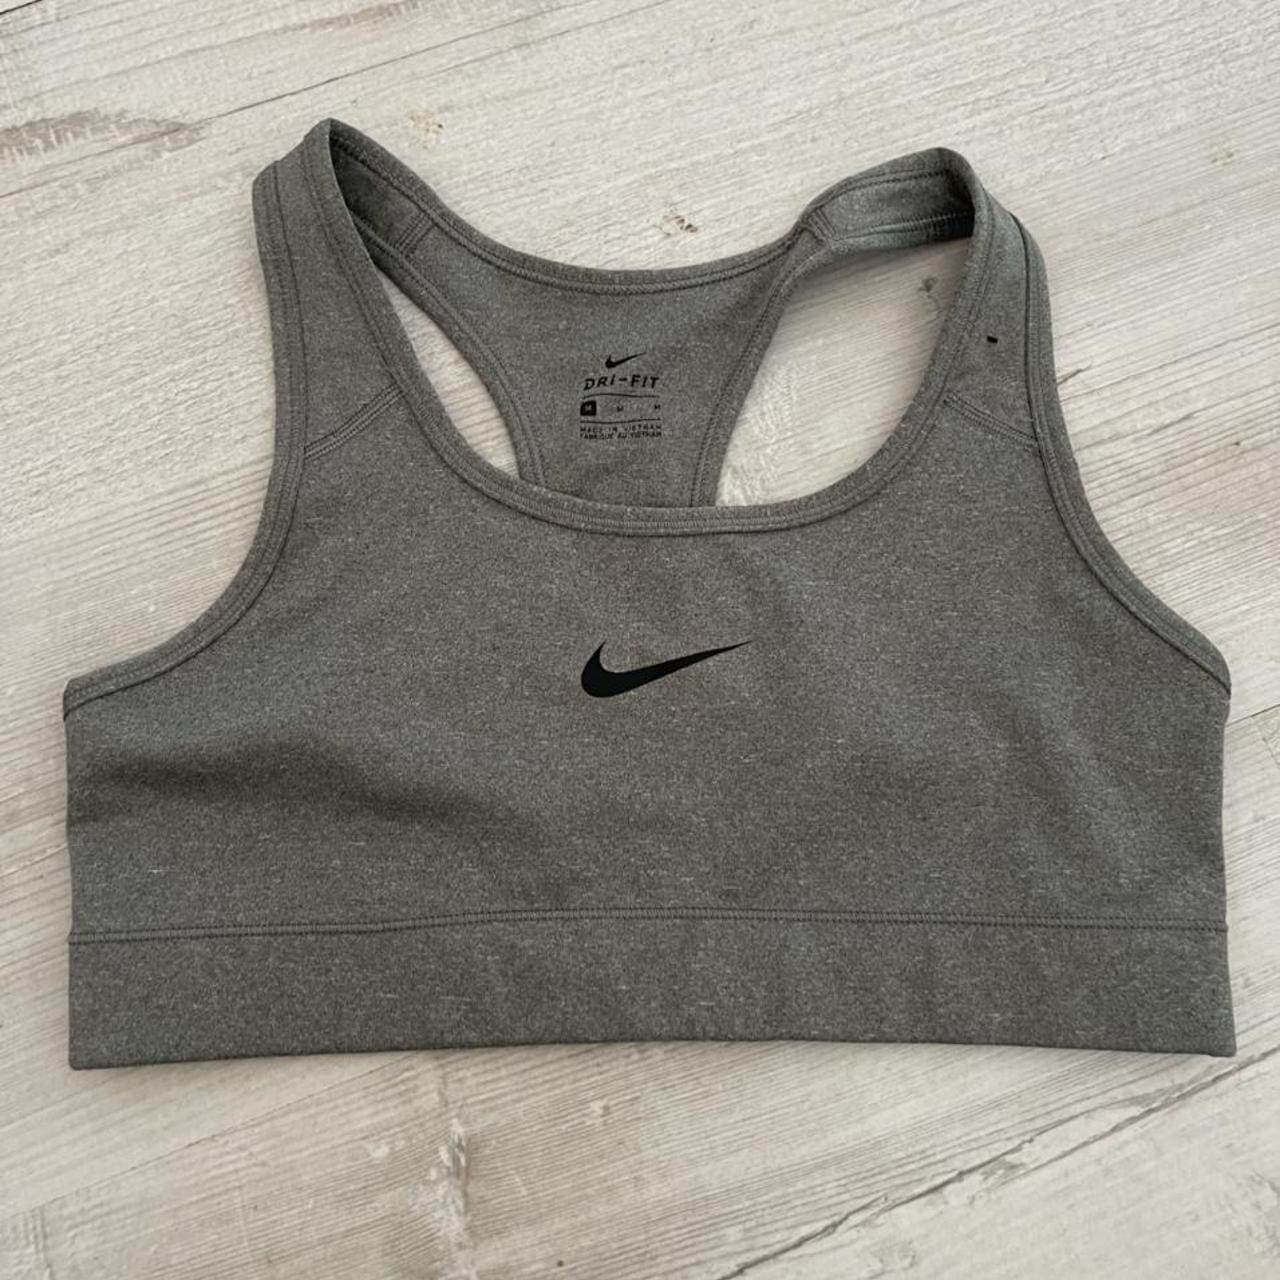 Nike Pro Dri-Fit sports bra Black and blue print - Depop